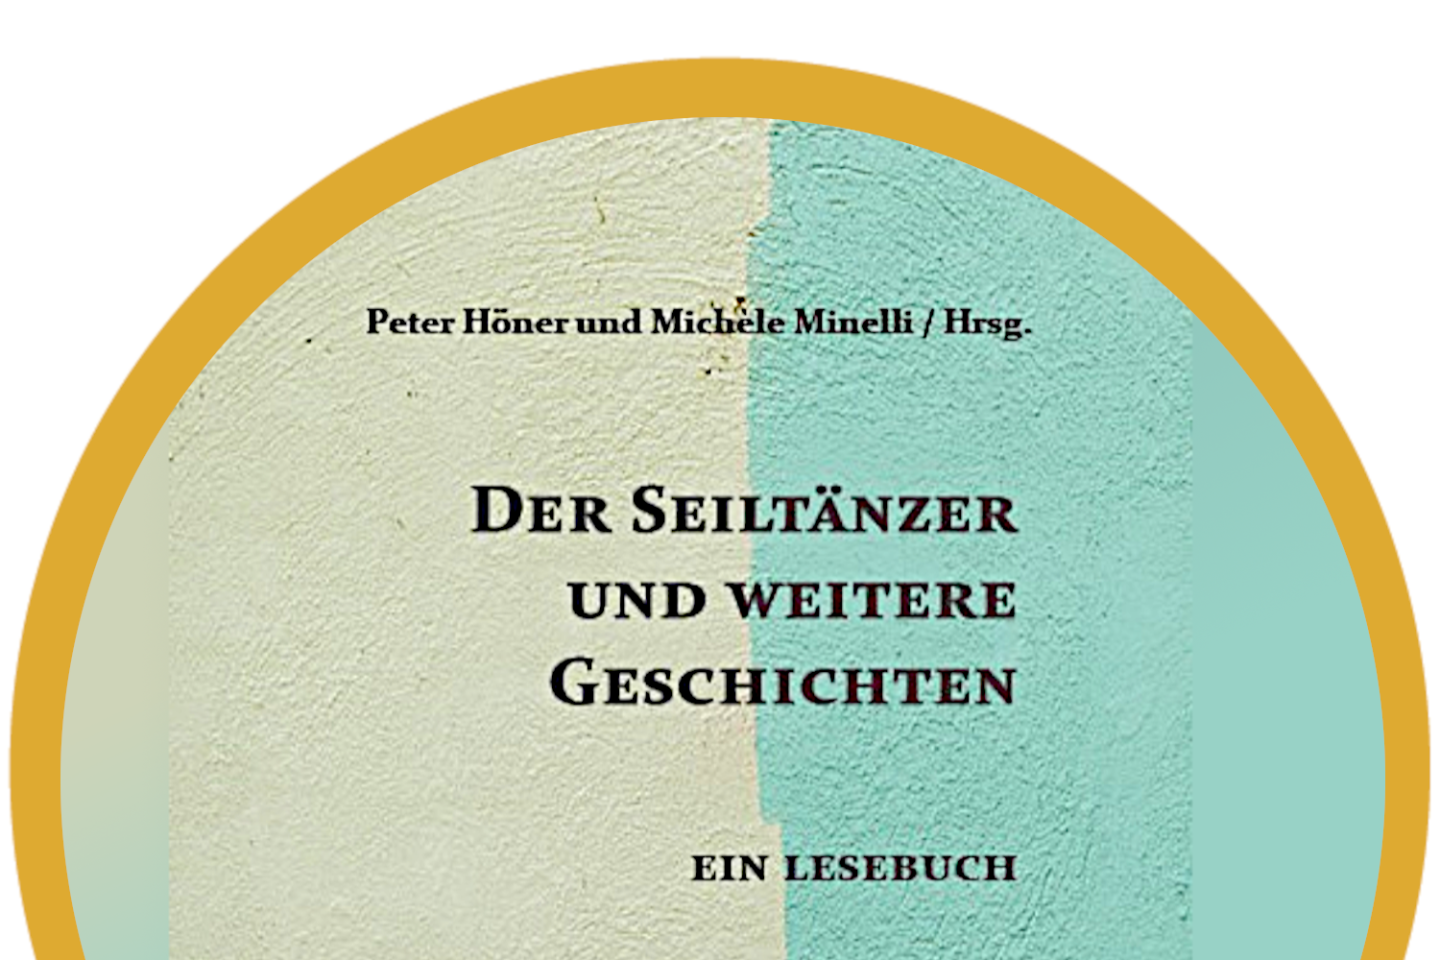 Buchtaufe - Peter Höner und Michèle Minelli / Hrsg.: Der Seiltänzer und weitere Geschichten